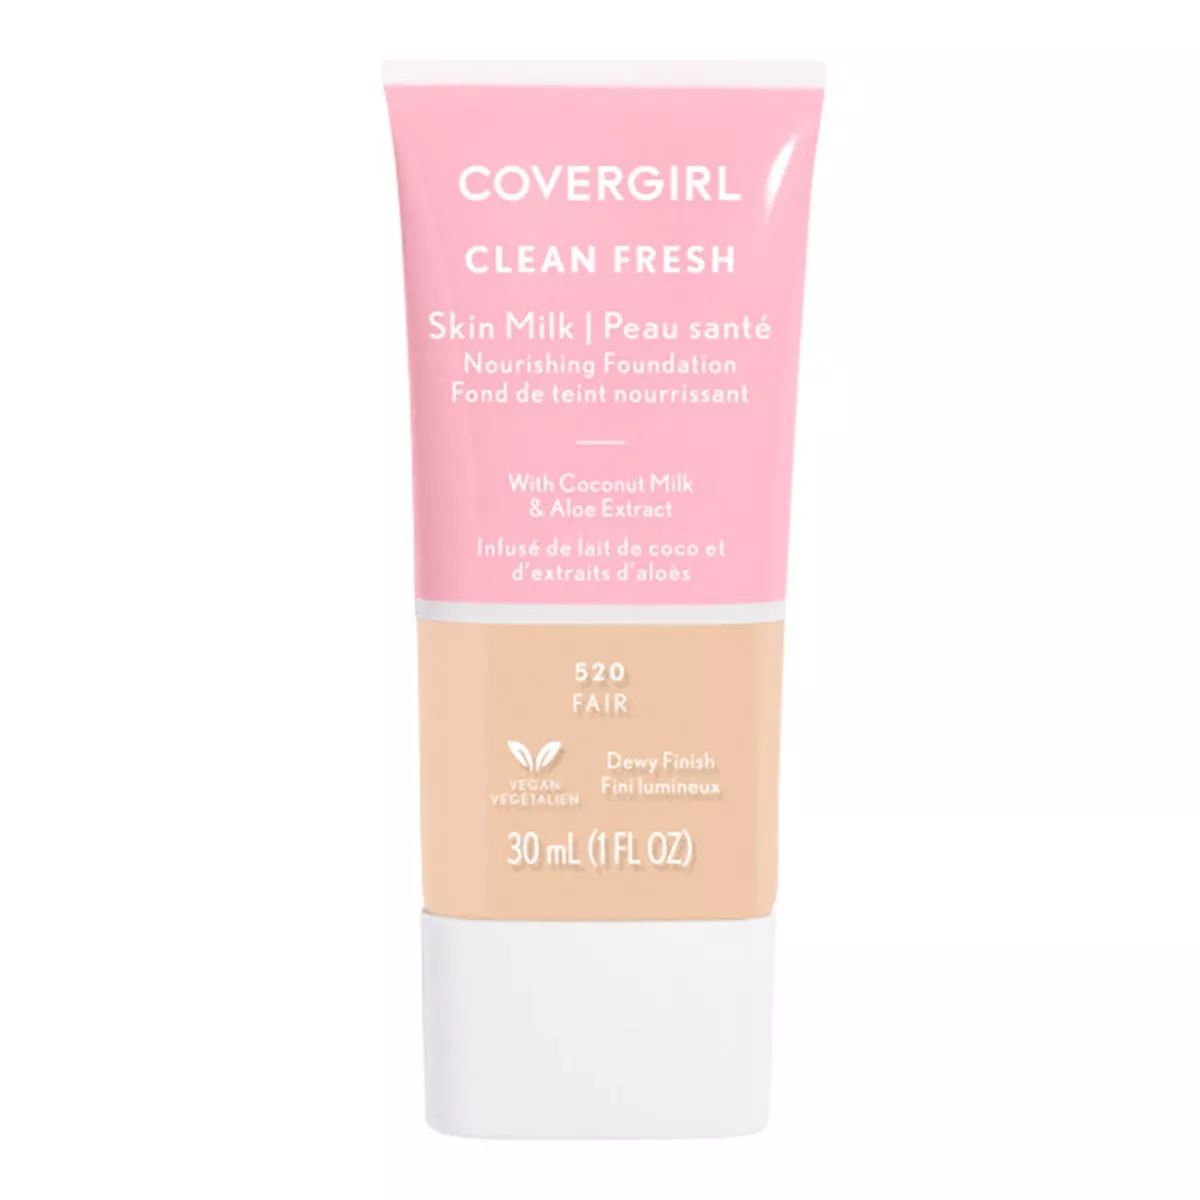 COVERGIRL Clean Fresh Skin Milk Foundation Dewy Finish - 1 fl oz | Target